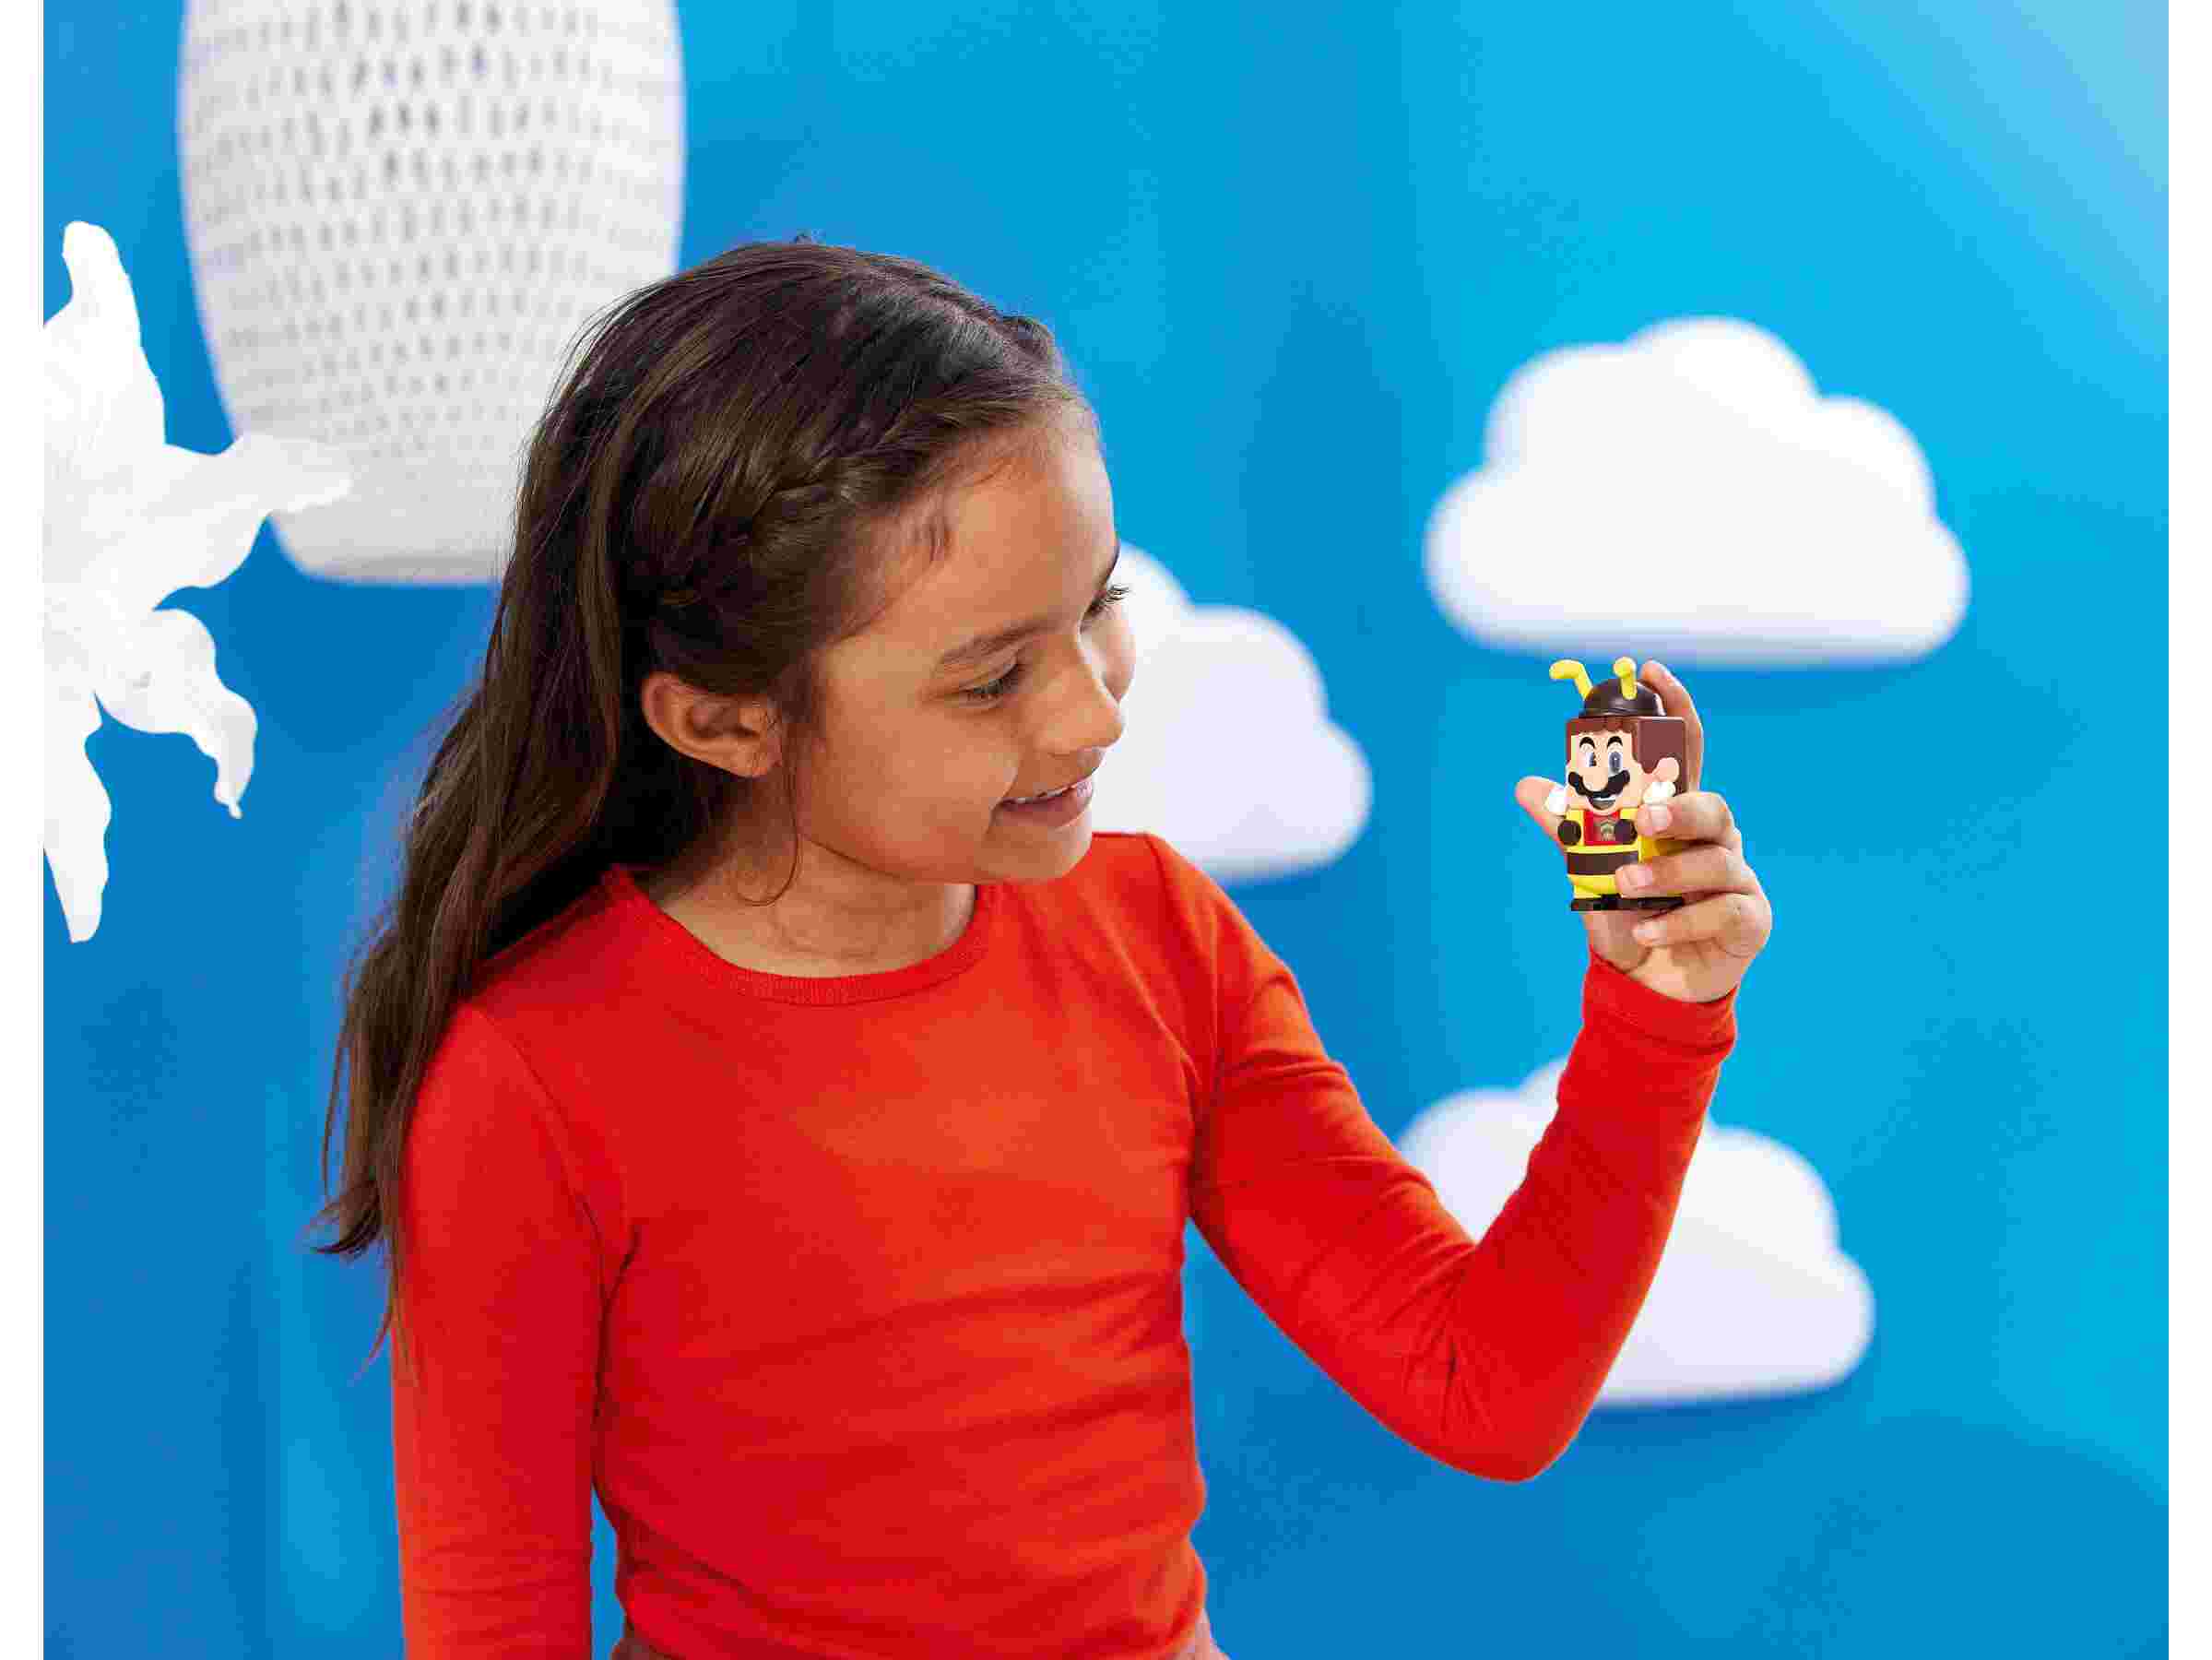 LEGO 71393 Super Mario Bienen-Mario Anzug, Power-Up-Paket, interaktiver Anzug